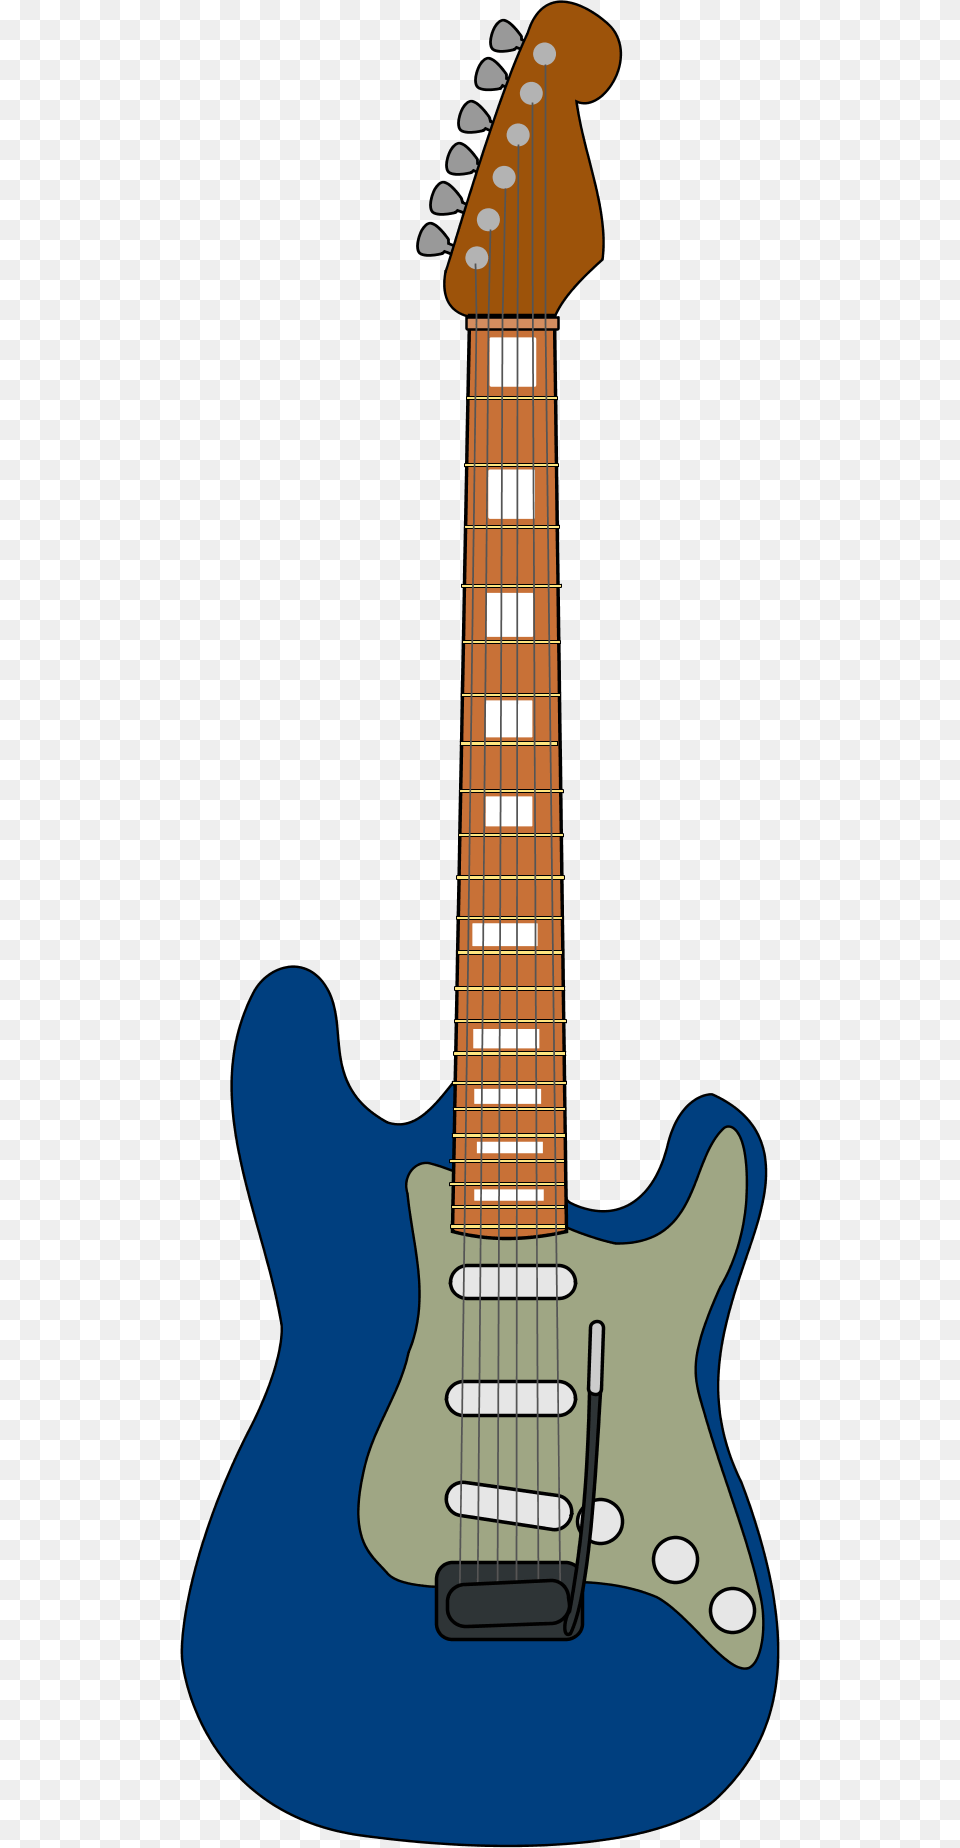 Wooden Guitar Vector Clip Art Blue Guitar Clipart, Bass Guitar, Musical Instrument, Electric Guitar Png